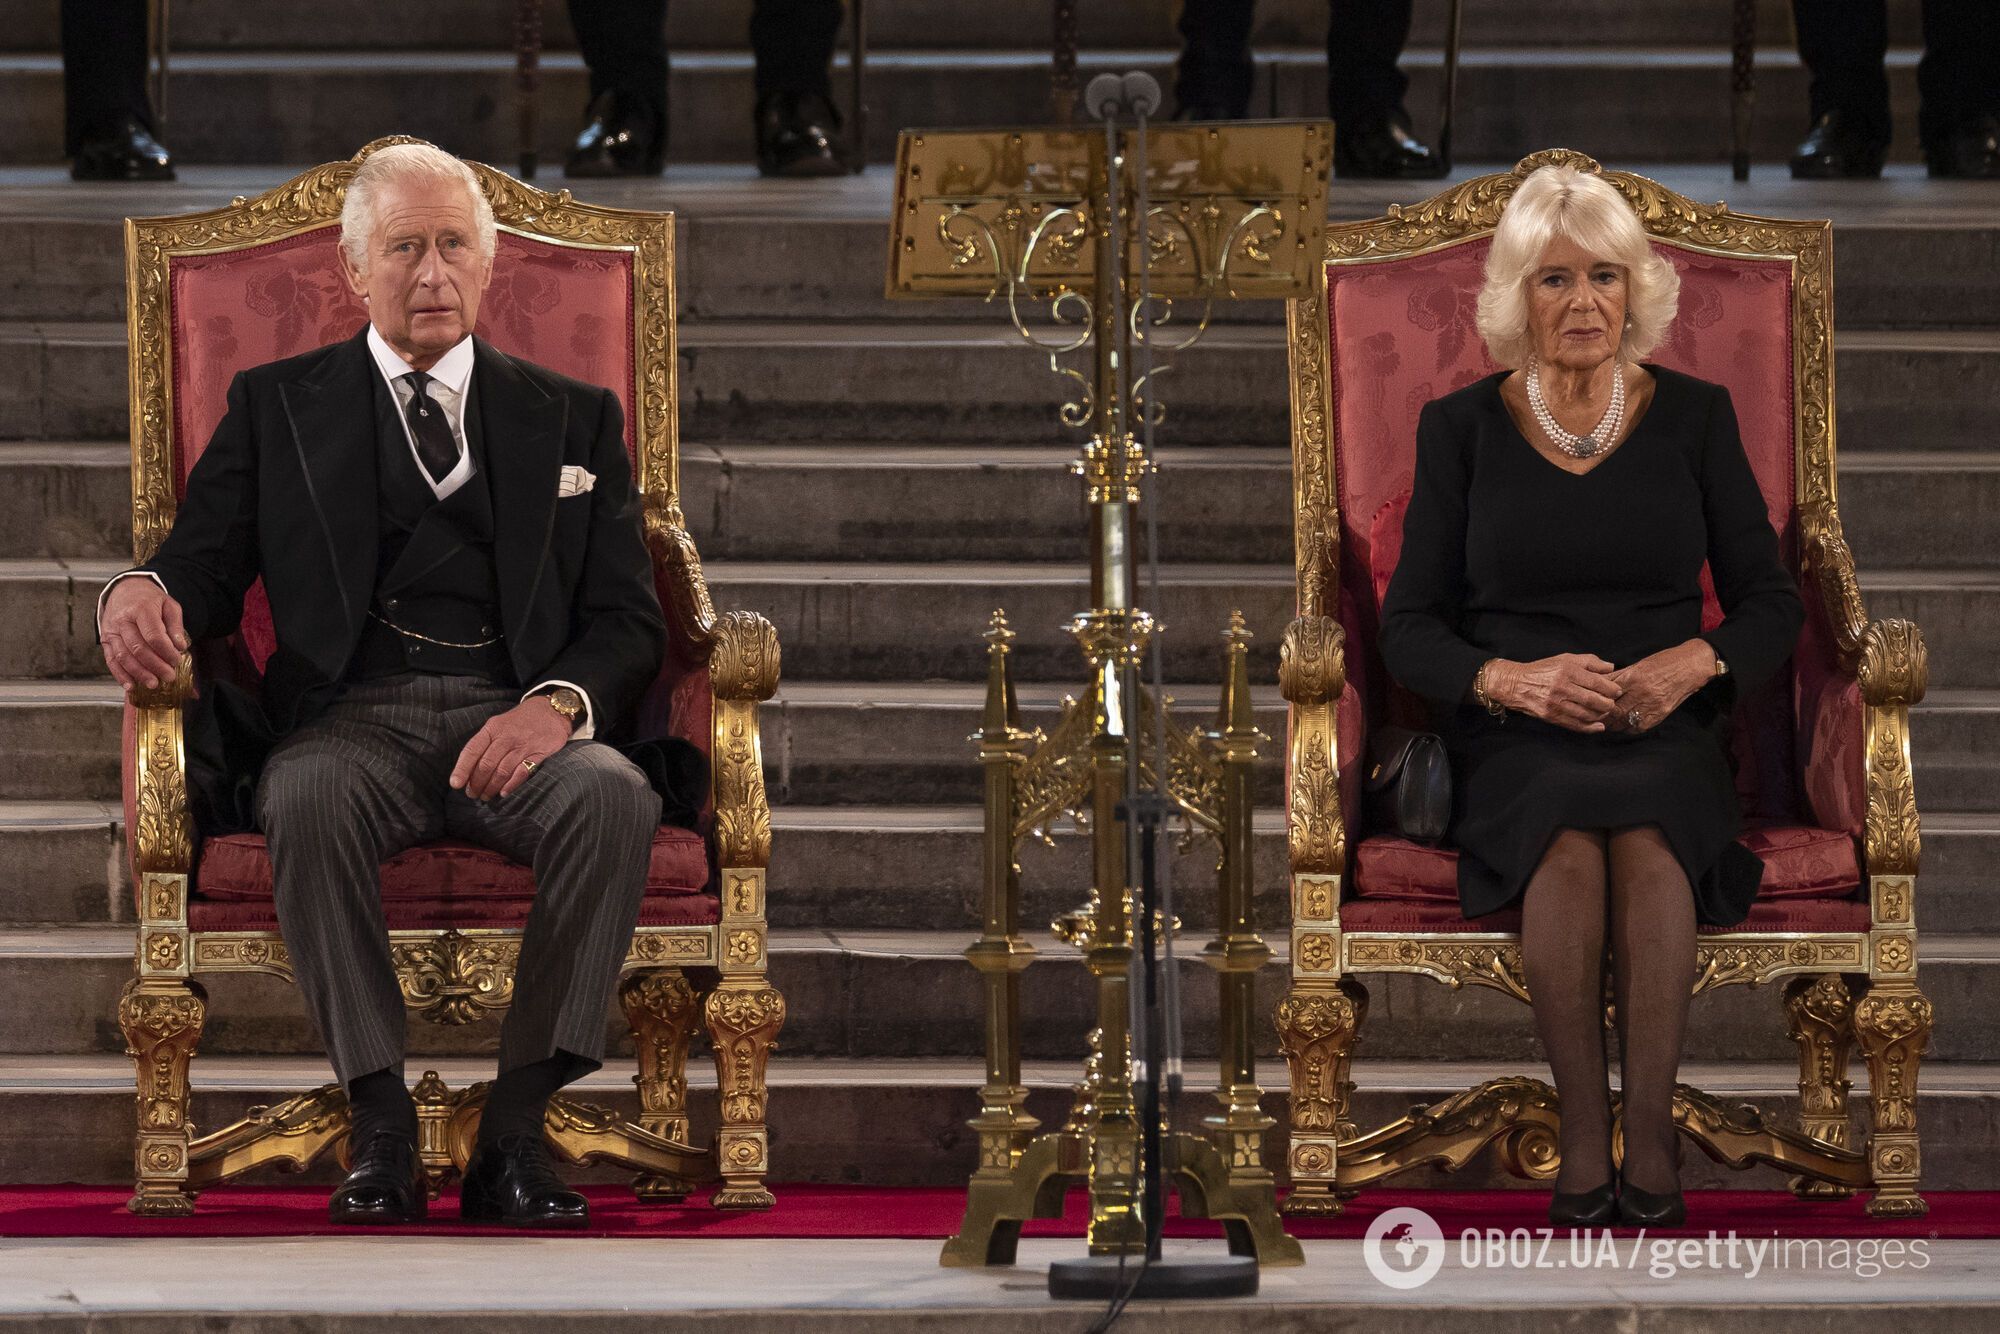 Фінал серіалу "Корона" передбачив майбутнє монархії? Які скандали королівської родини можуть призвести до її краху